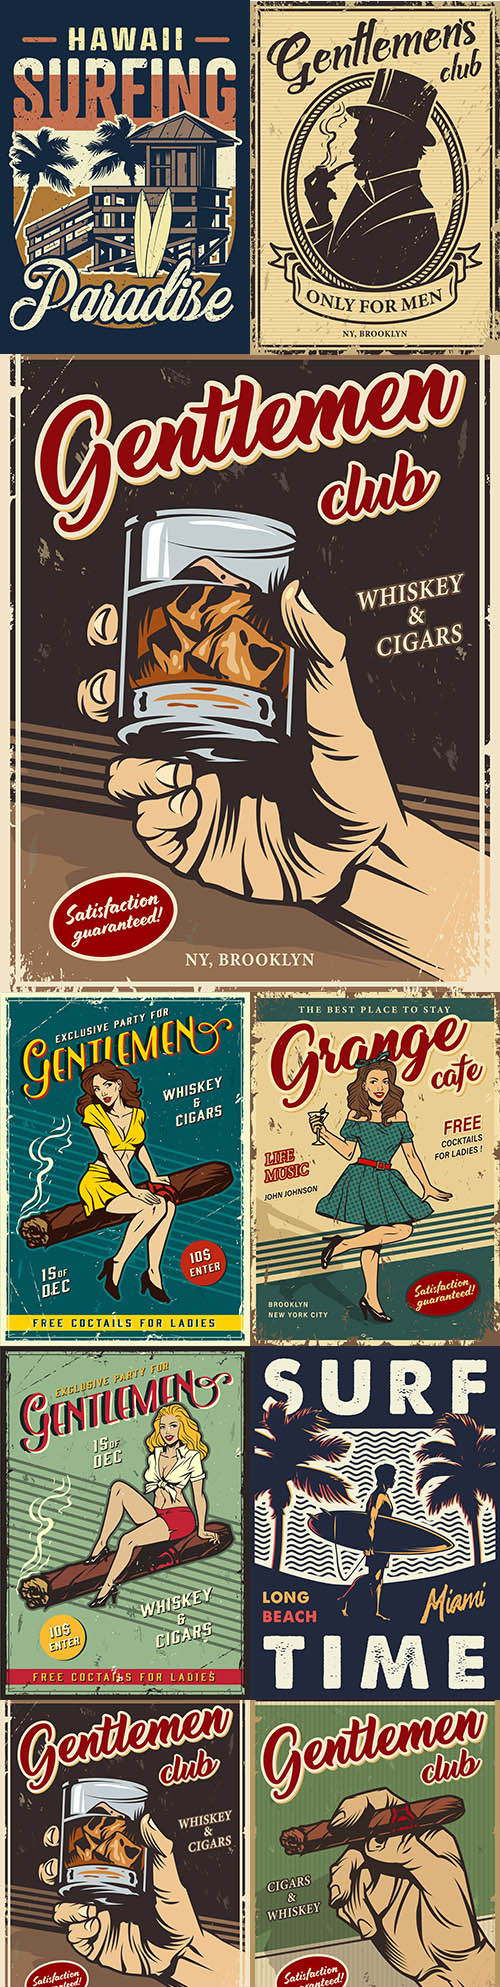 Vintage gentleman club advertising template
